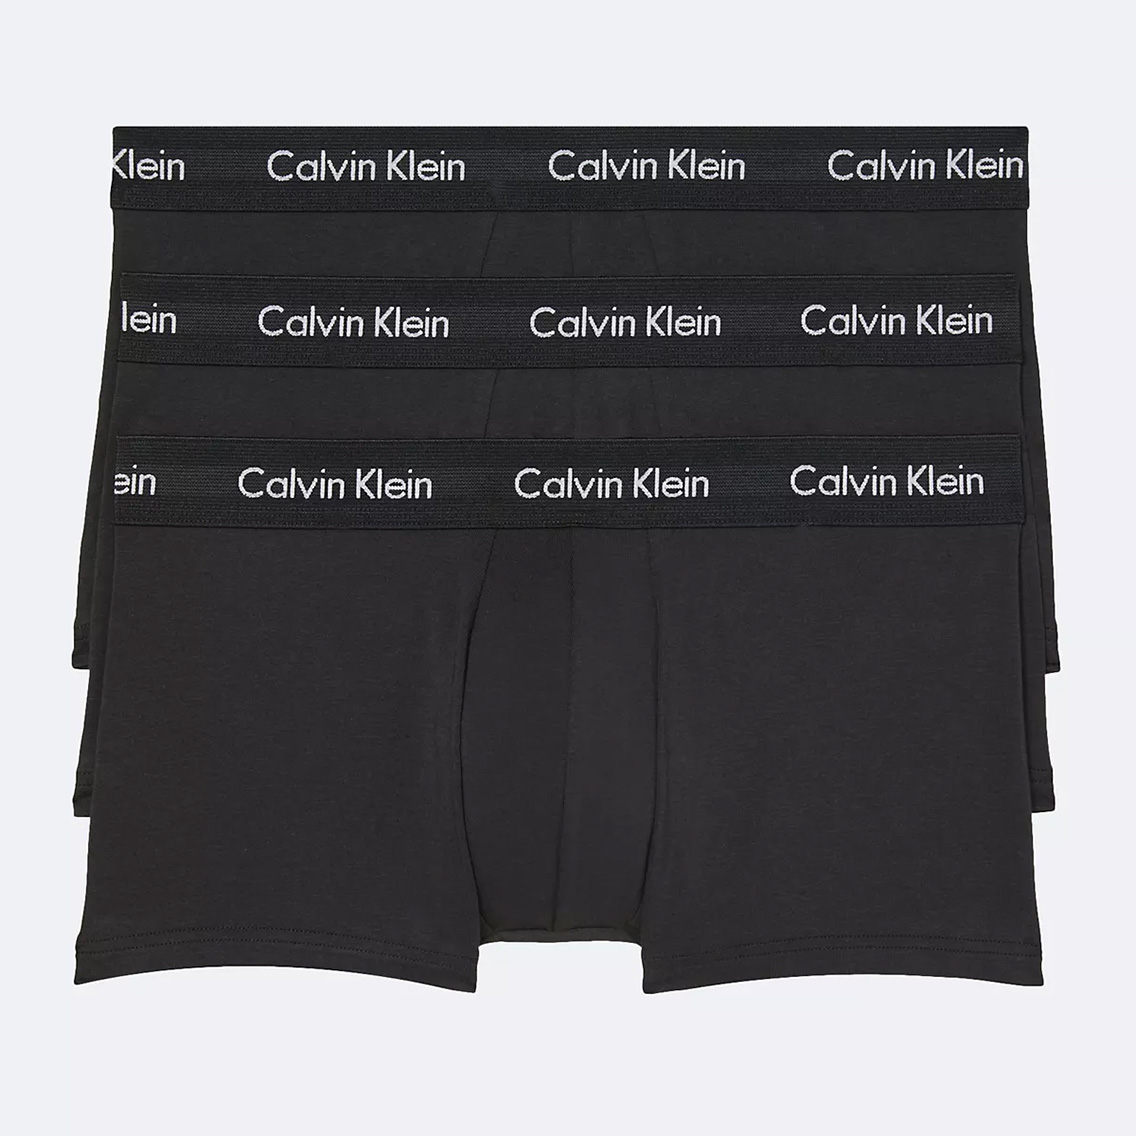 [NB2614-001] Calvin Klein カルバンクライン ボクサーパンツ メンズ アンダーウェア インナー 男性 下着 ブランド おすすめ 人気 プレゼ